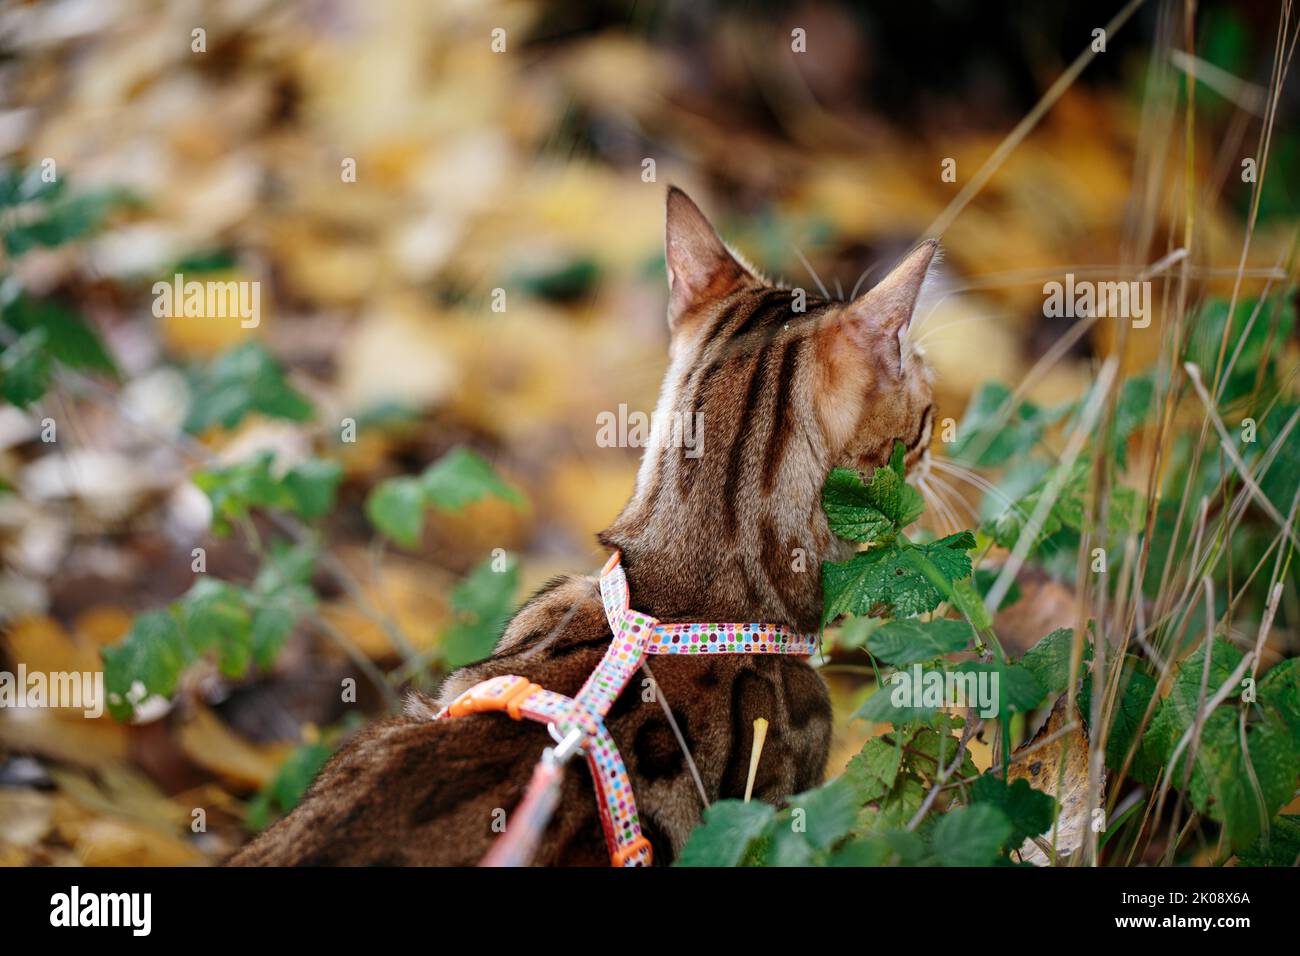 Excursión al aire libre con el gato de Bengala en octubre Autum Foto de stock